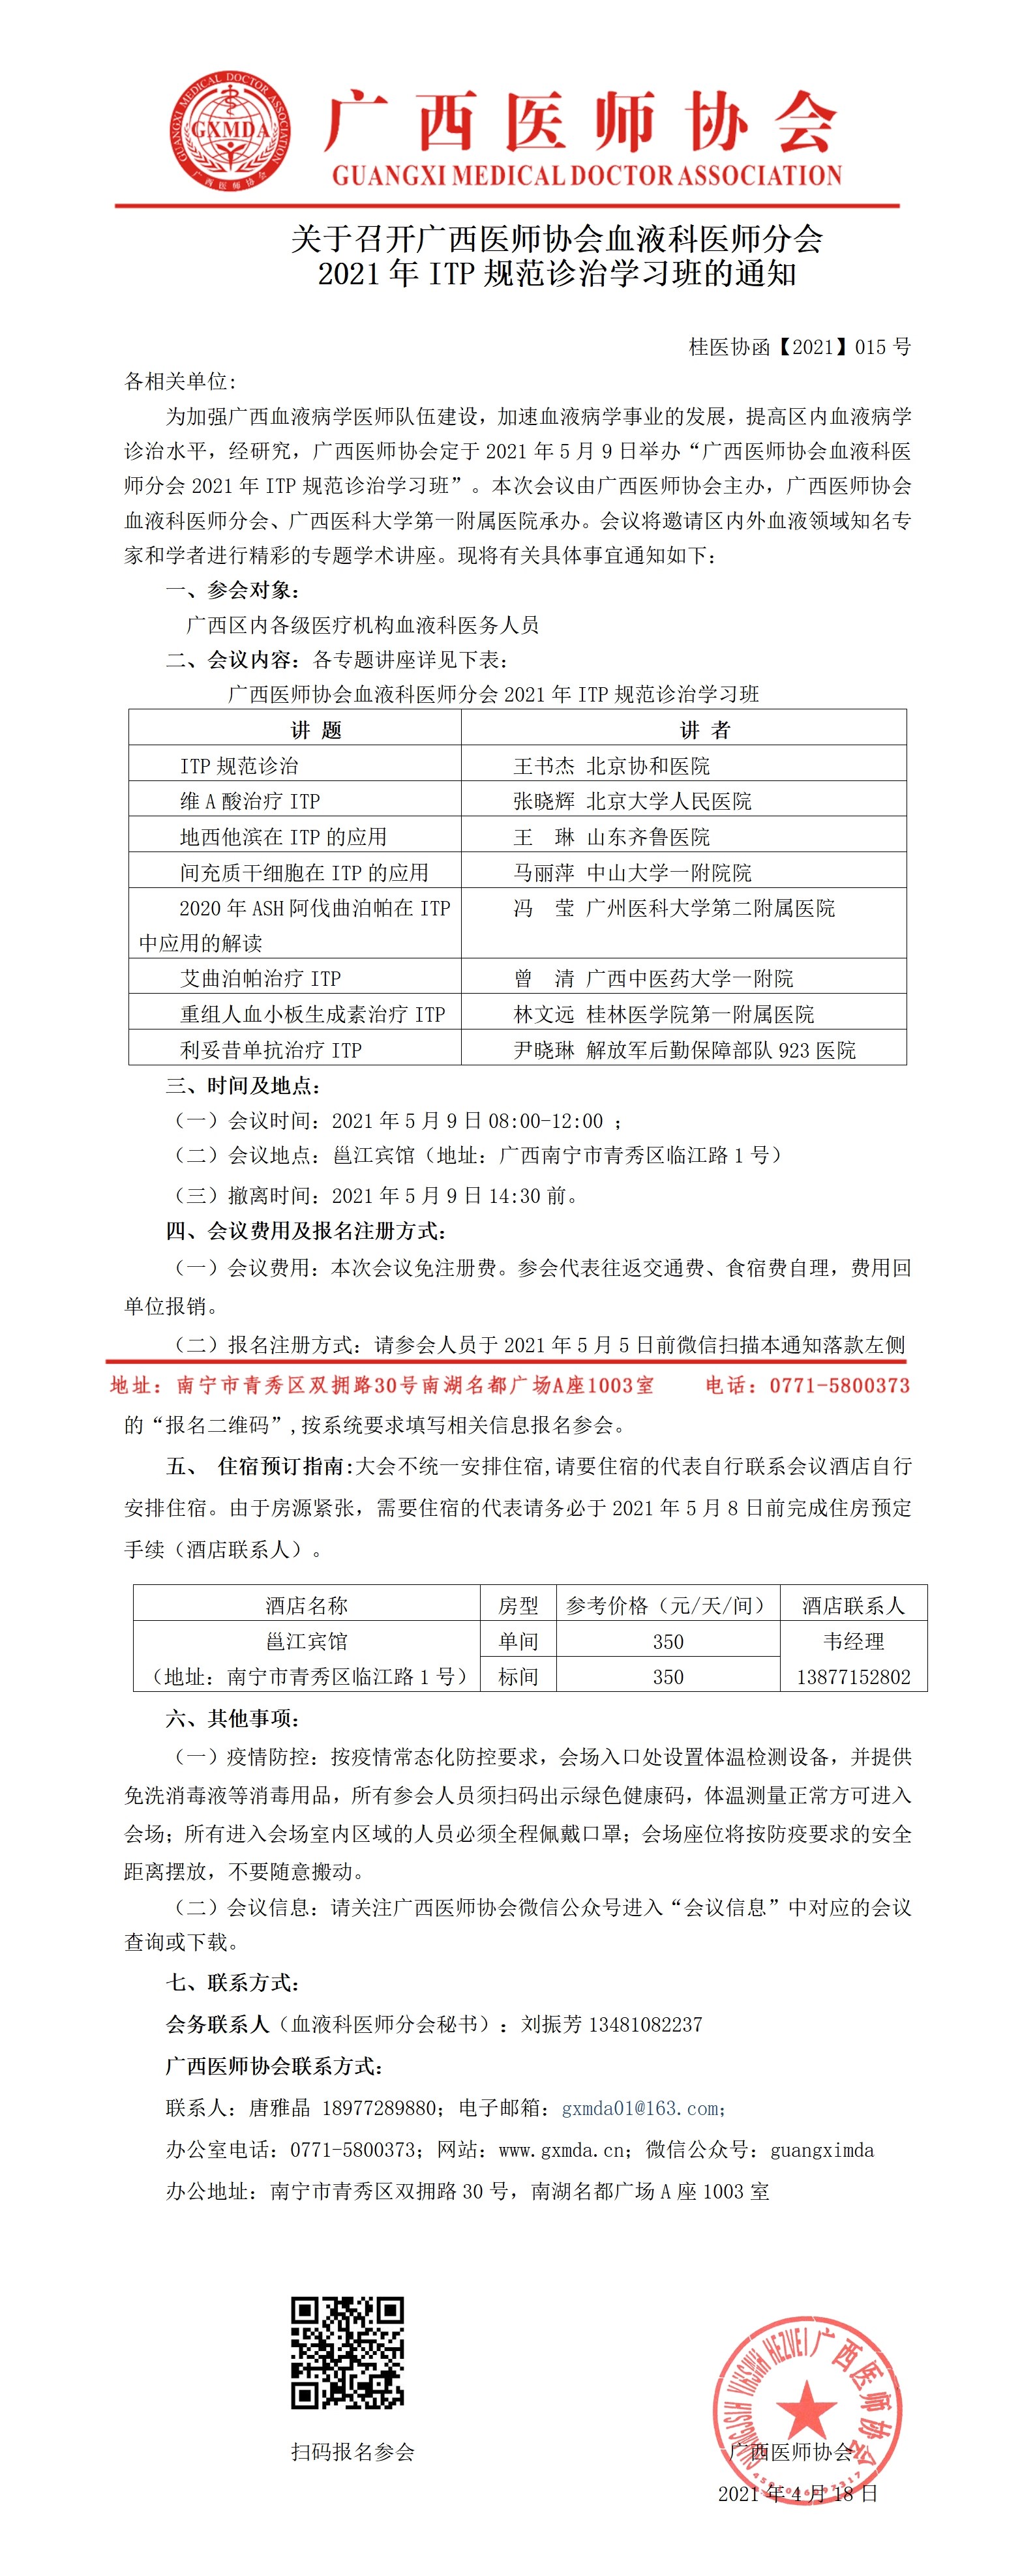 【2021】015号 广西医师协会血液科医师分会2021年ITP规范诊治学习班通知.png